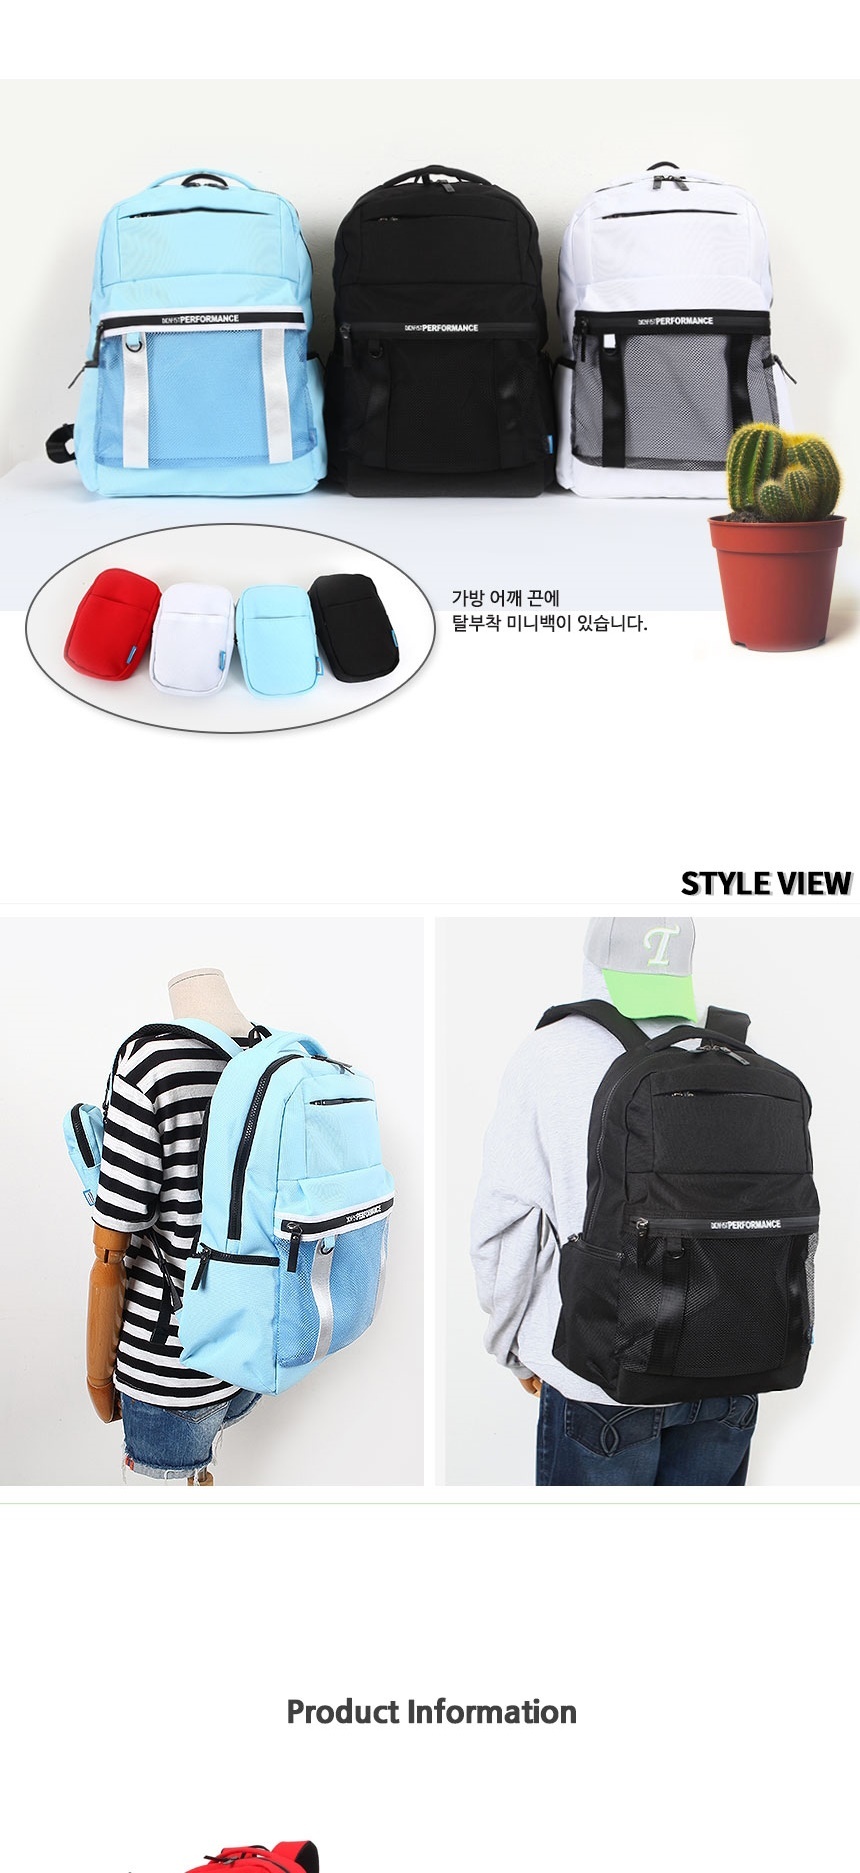 중학생가방,고등학생가방,노트북가방,중학생백팩